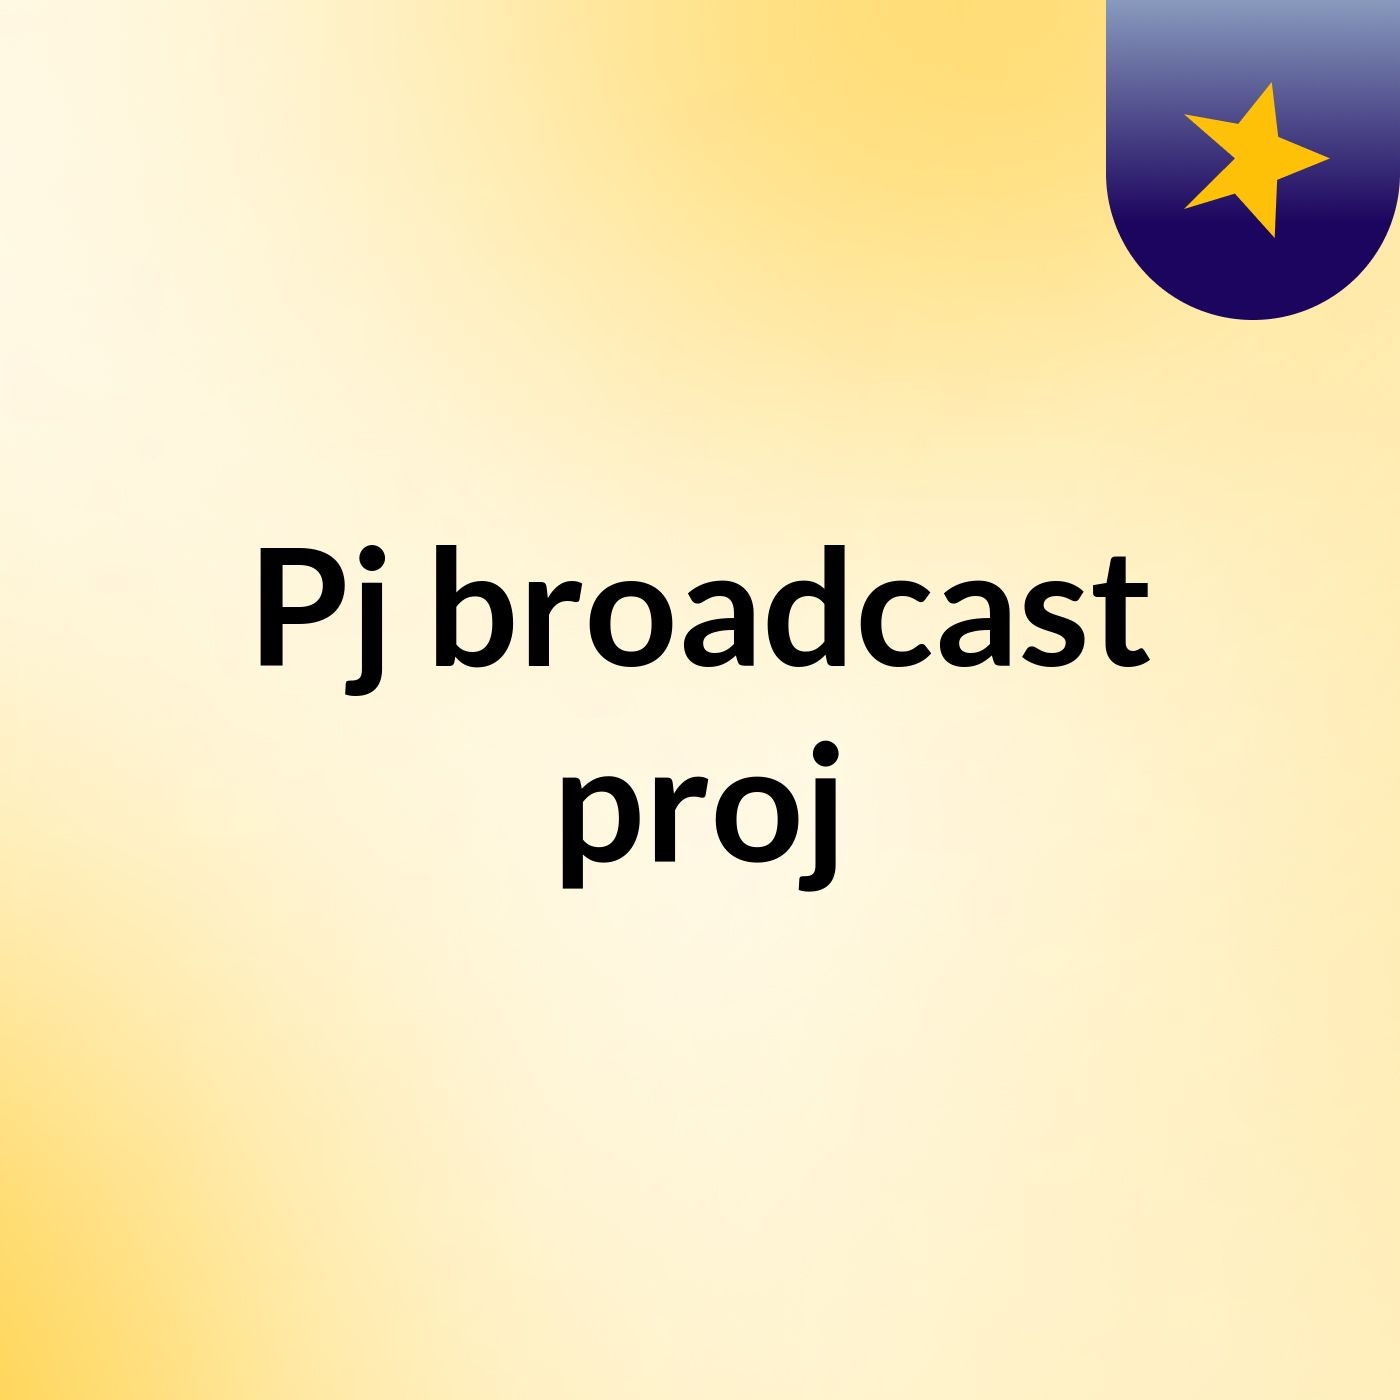 Pj broadcast proj